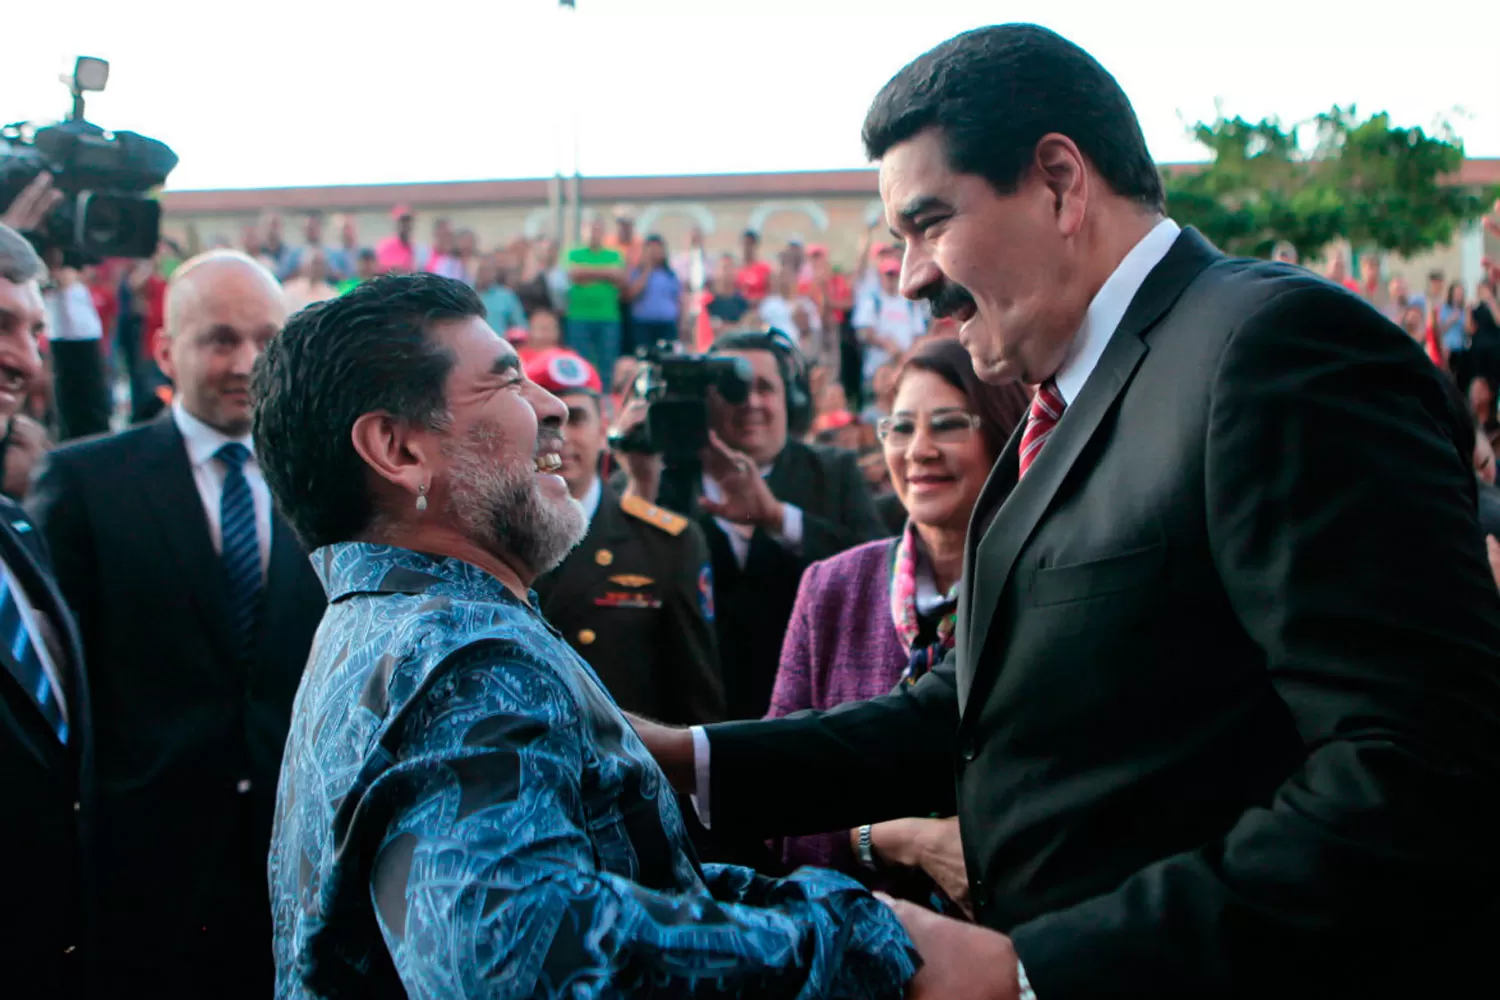 AMIGOS. Nicolás Maduro y Diego Armando Maradona son viejos amigos.